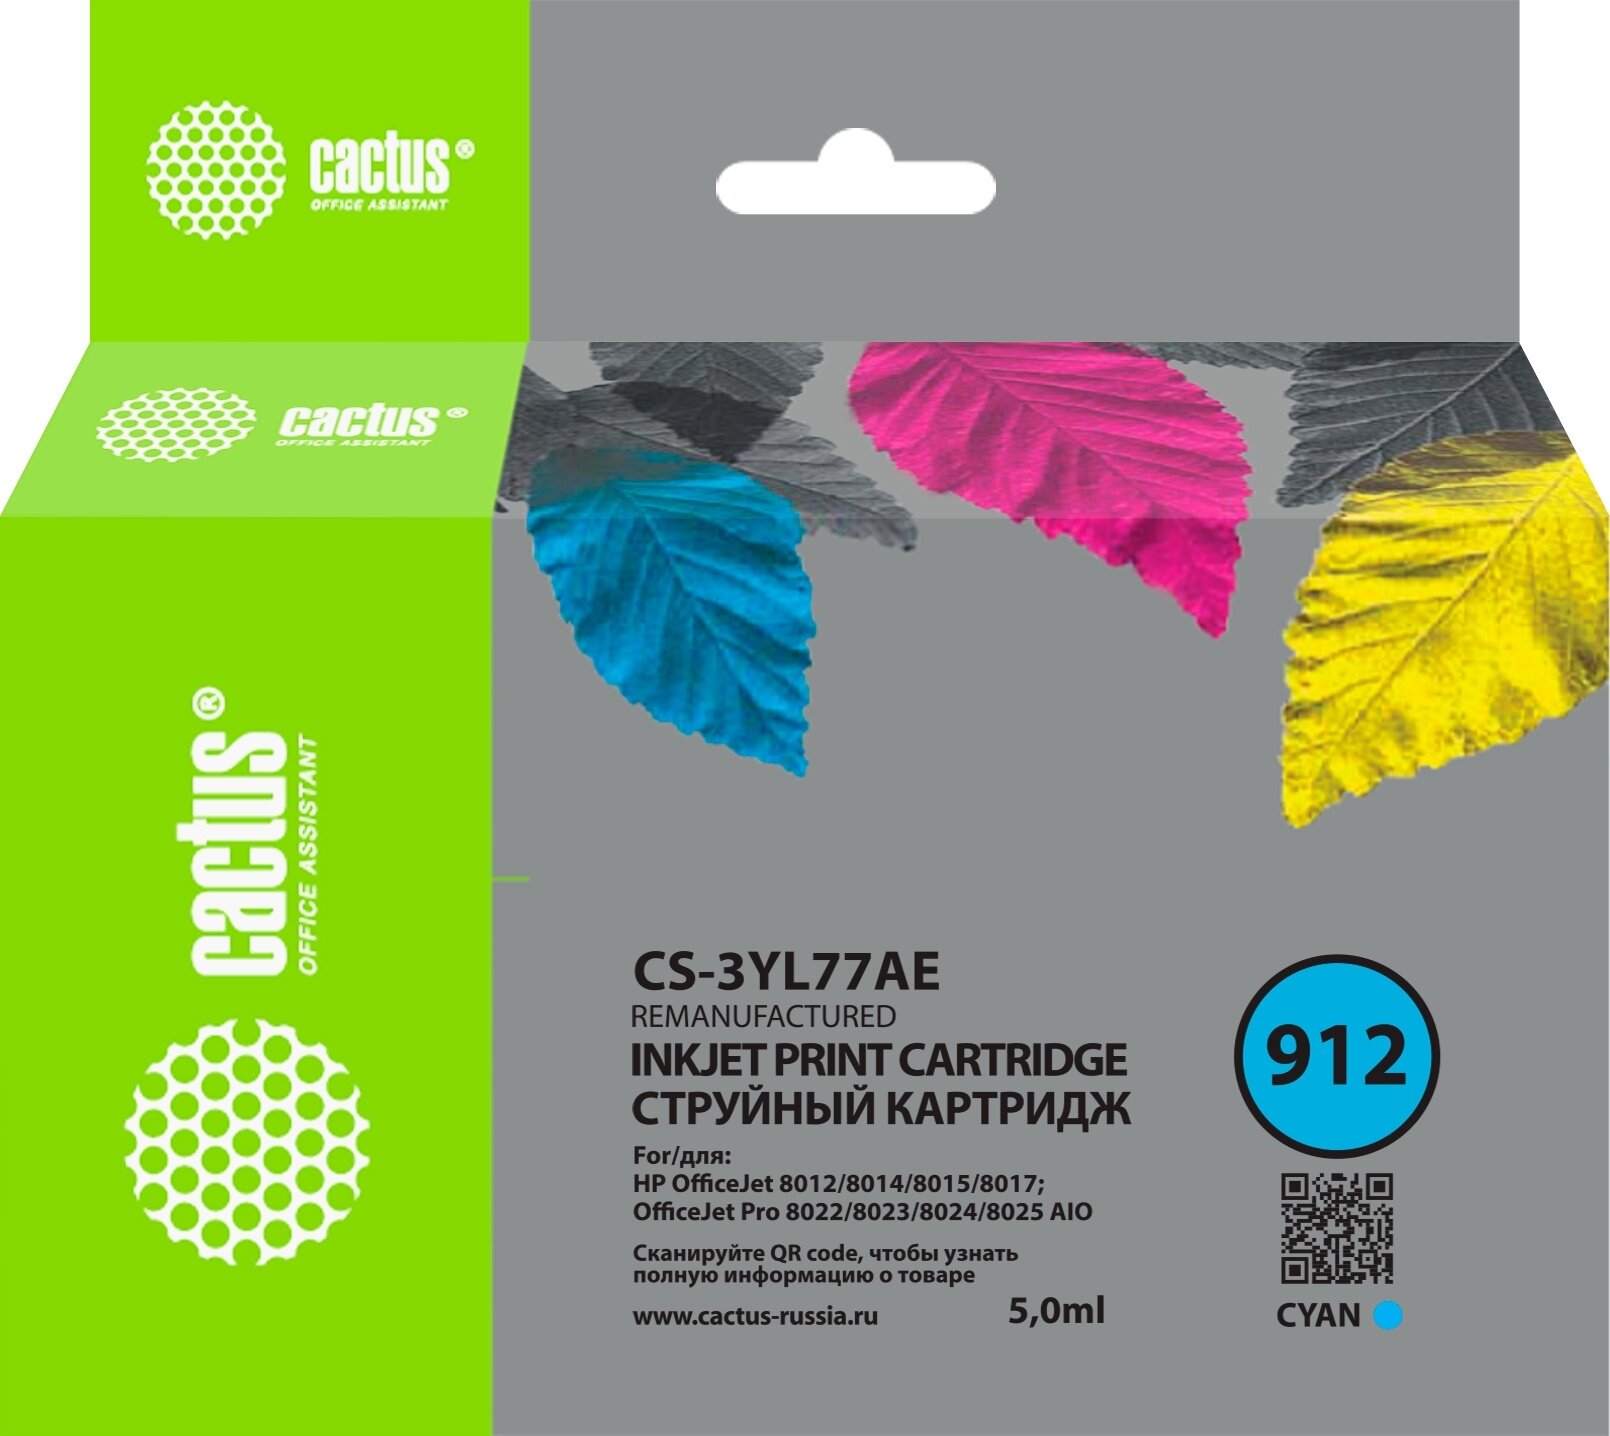 Картридж струйный Cactus CS-3YL77AE 912 голубой (5мл) для HP OfficeJet 8010/8012/8013/8014